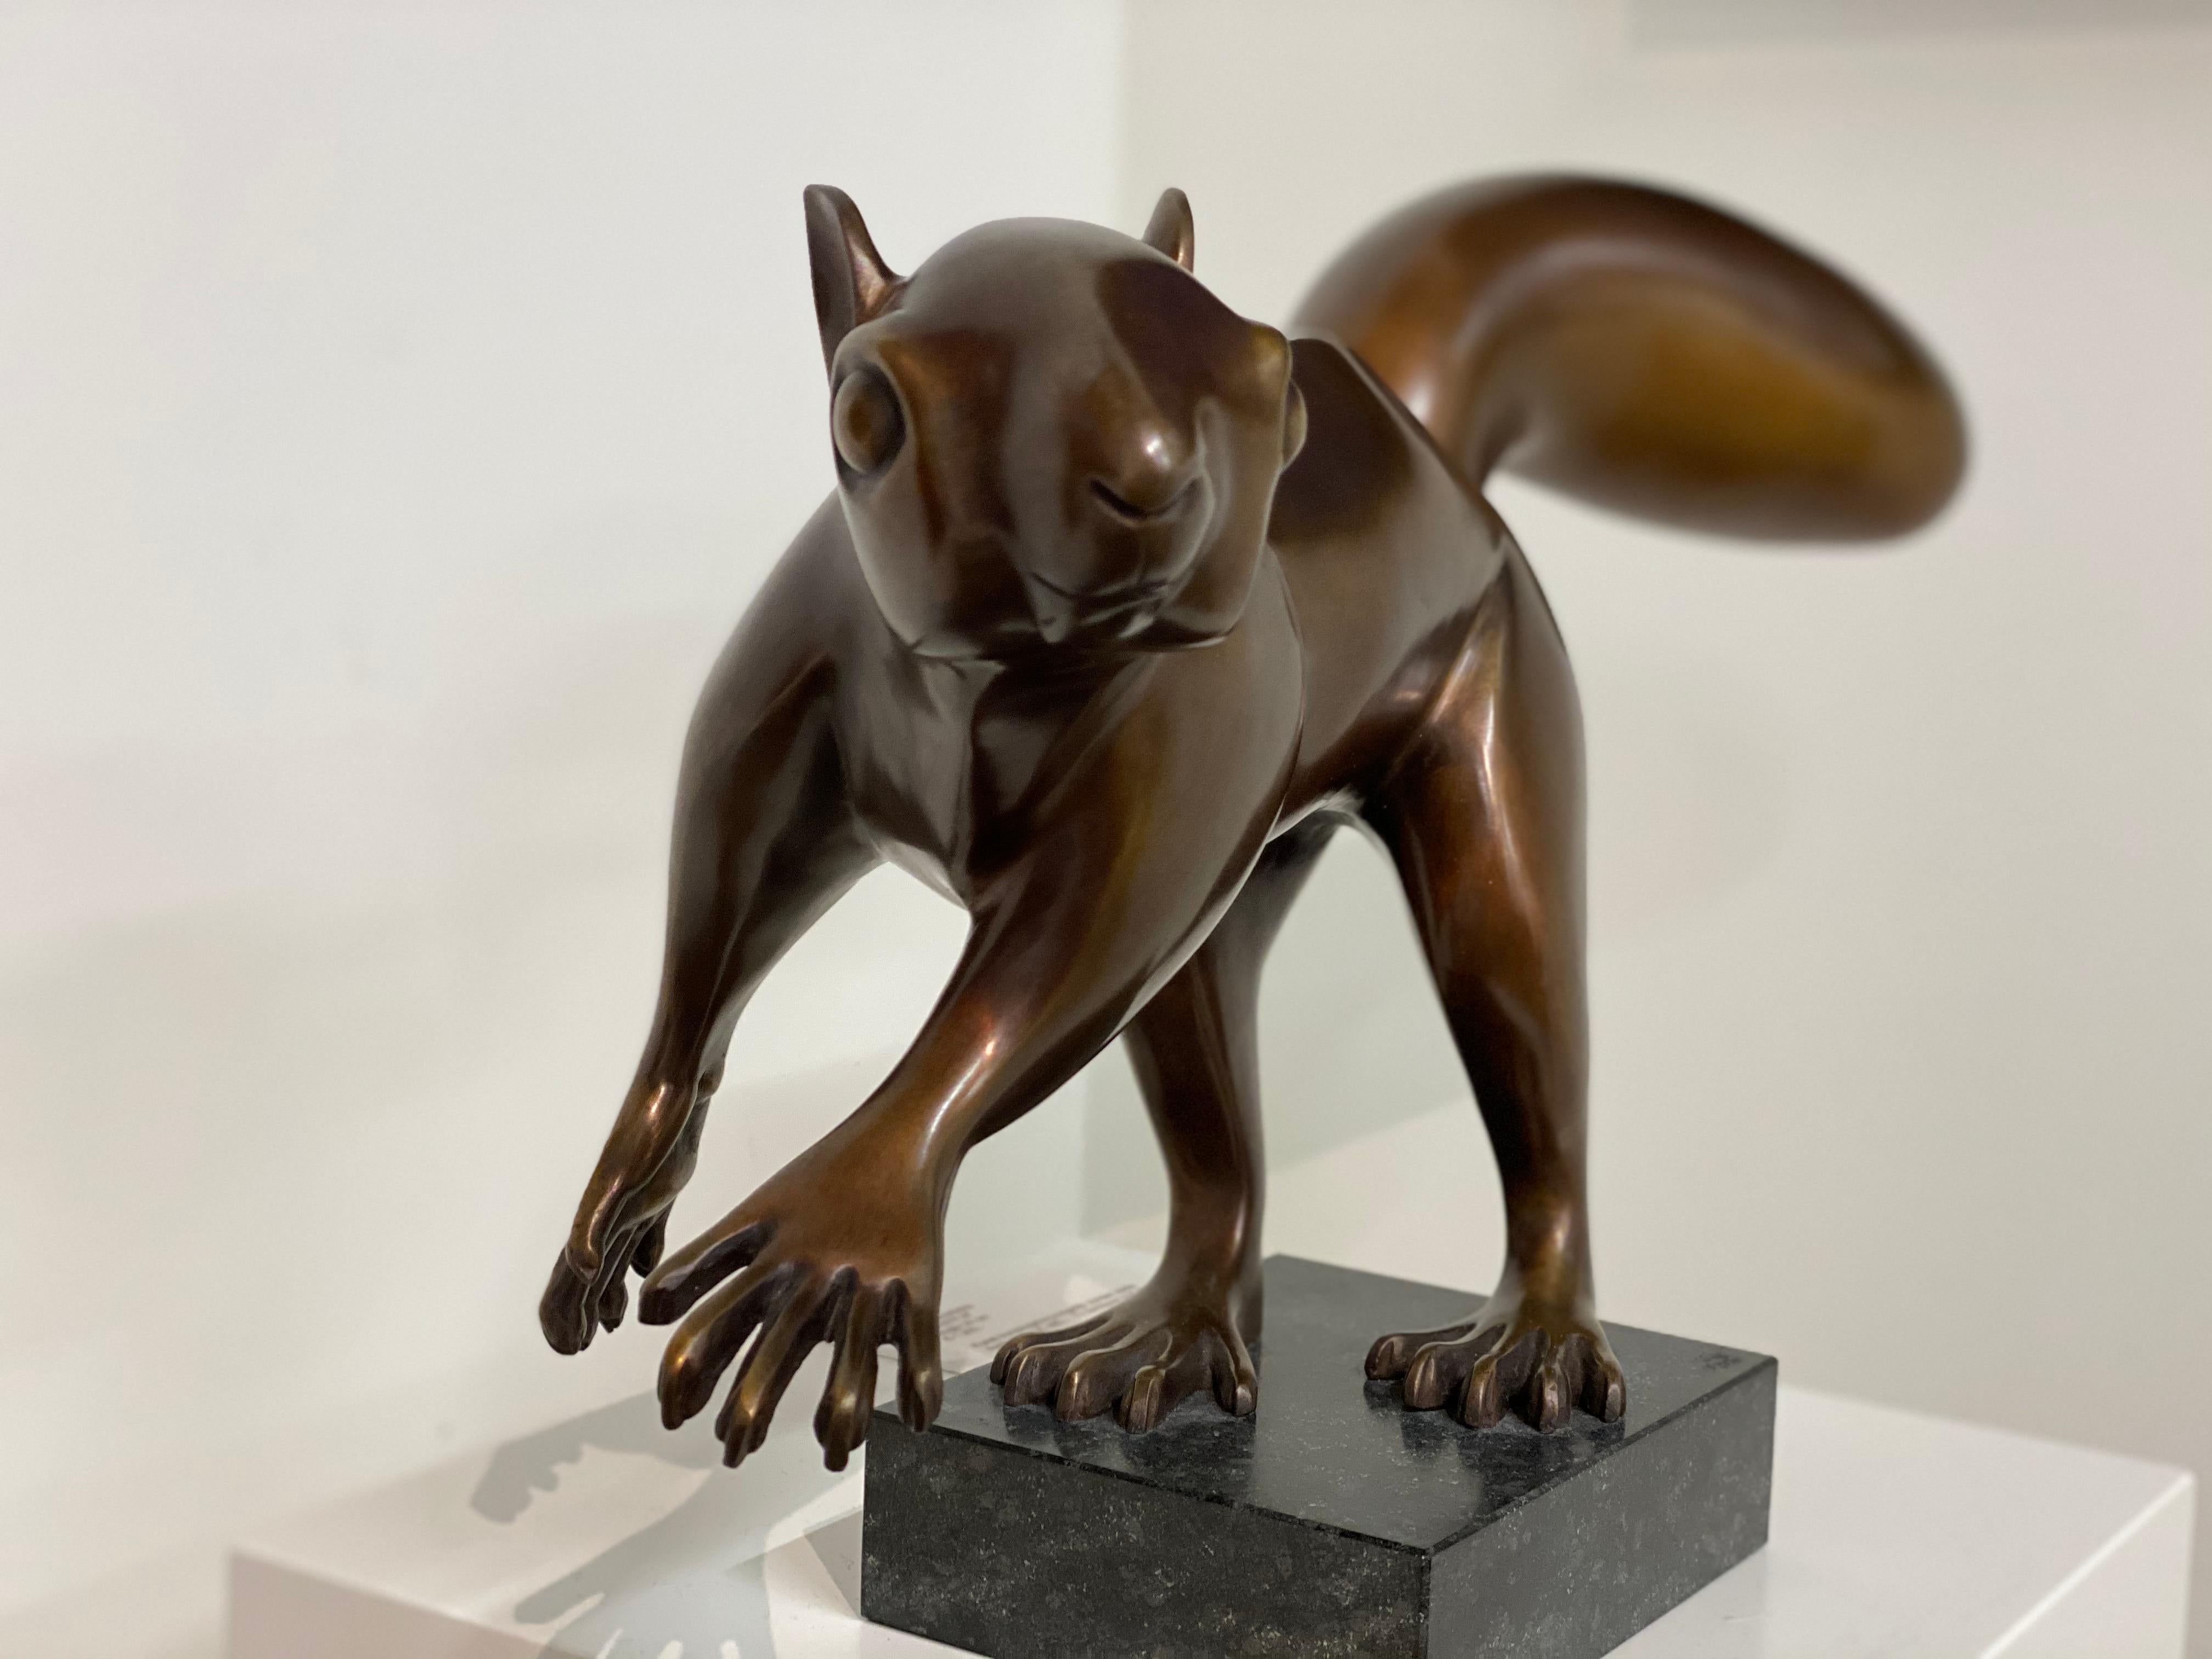 Eichhörnchen- niederländische Bronzeskulptur eines Eichhörnchens aus dem 21. Jahrhundert (Gold), Abstract Sculpture, von Frans van Straaten